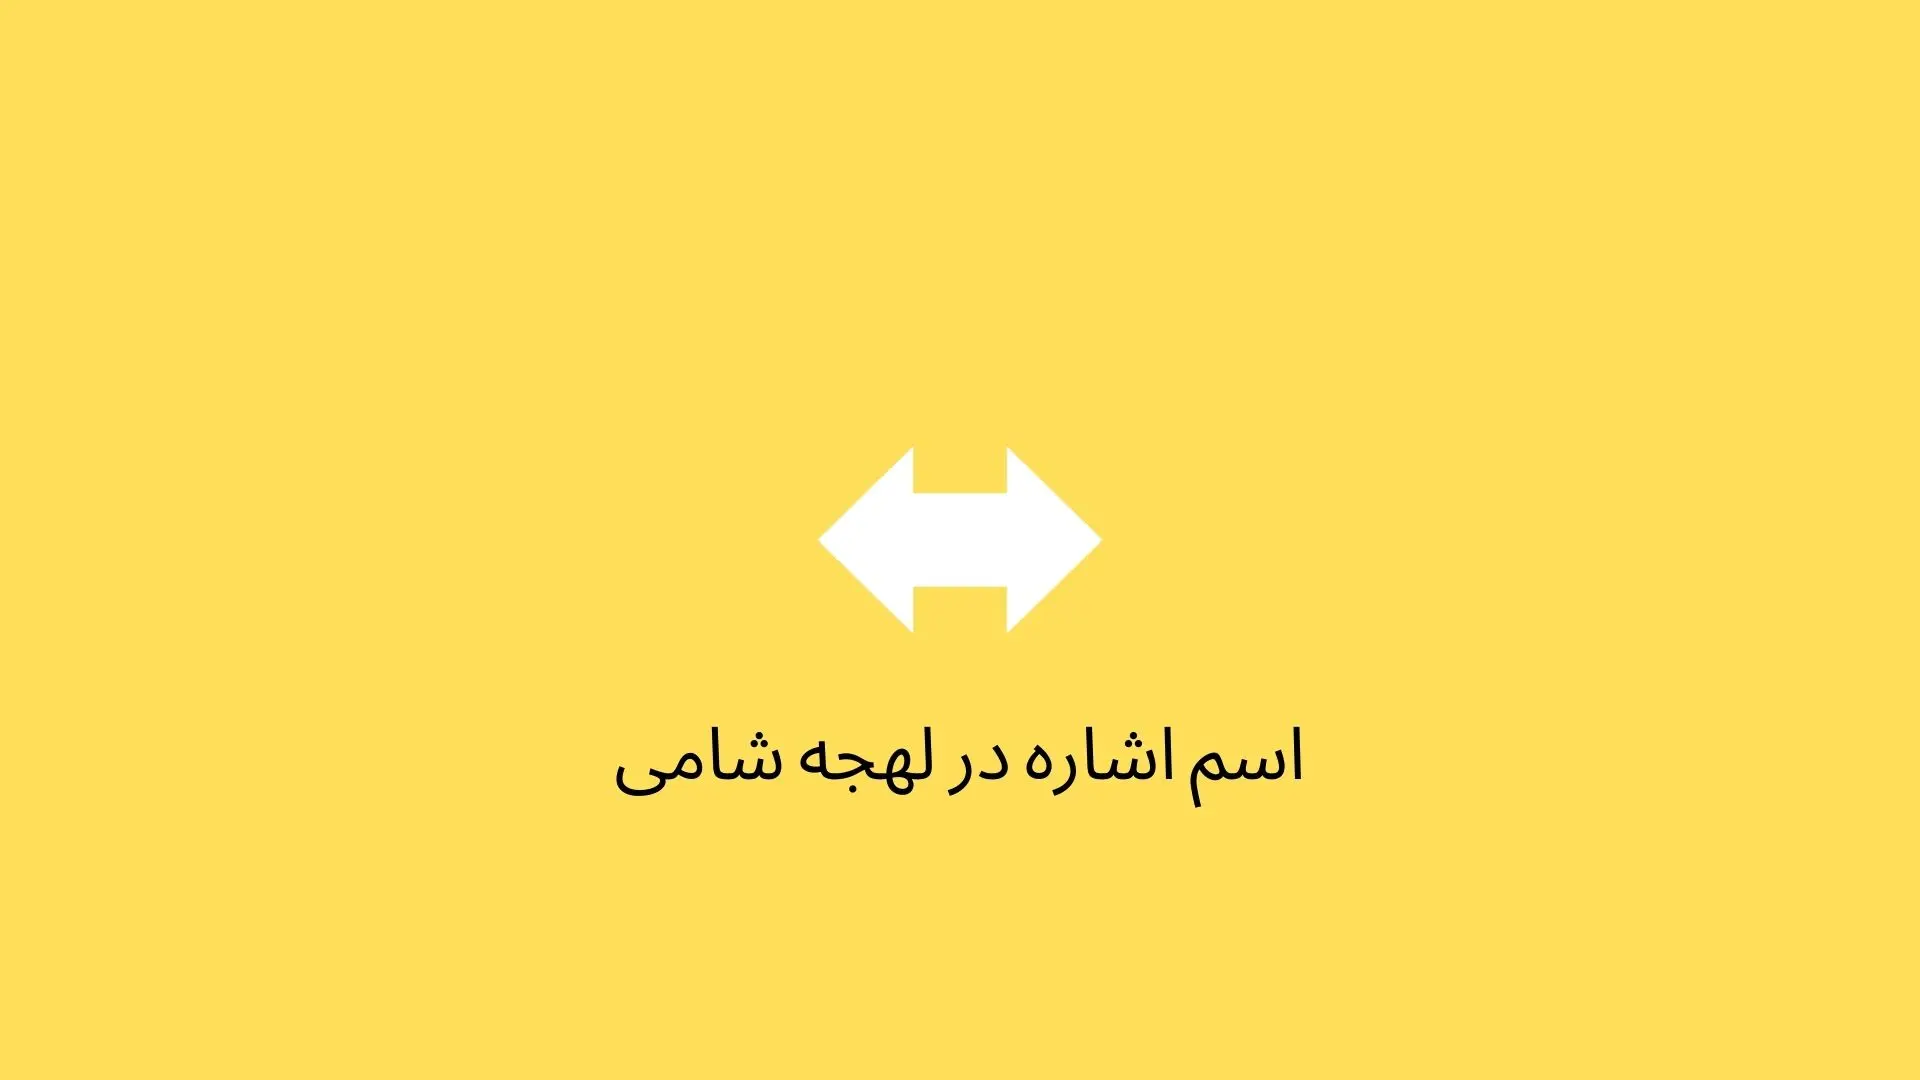 اسم‌های اشاره در عربی لهجه لبنانی و سوری (شامی)